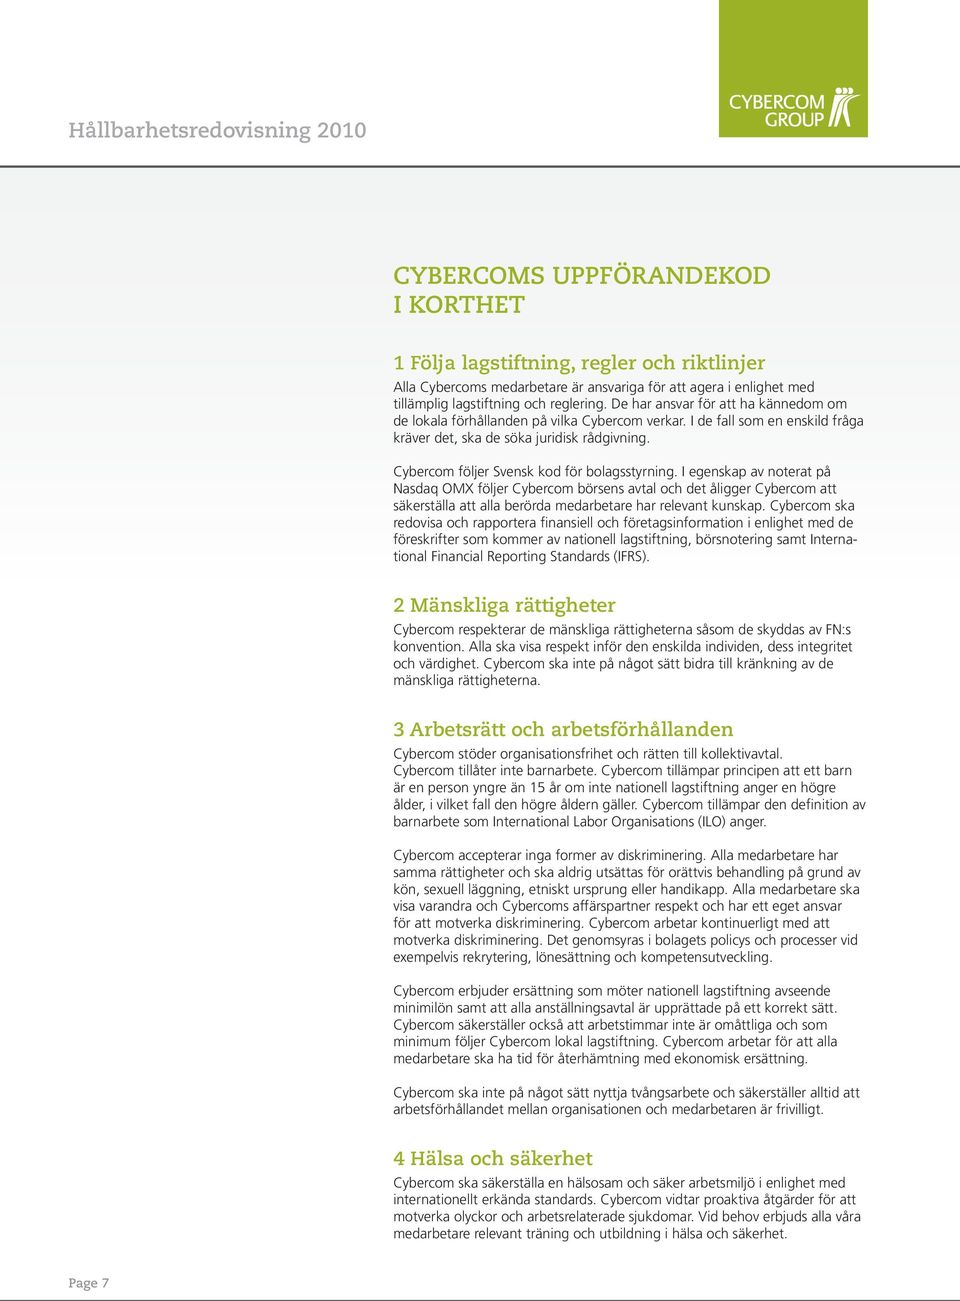 Cybercom följer Svensk kod för bolagsstyrning.